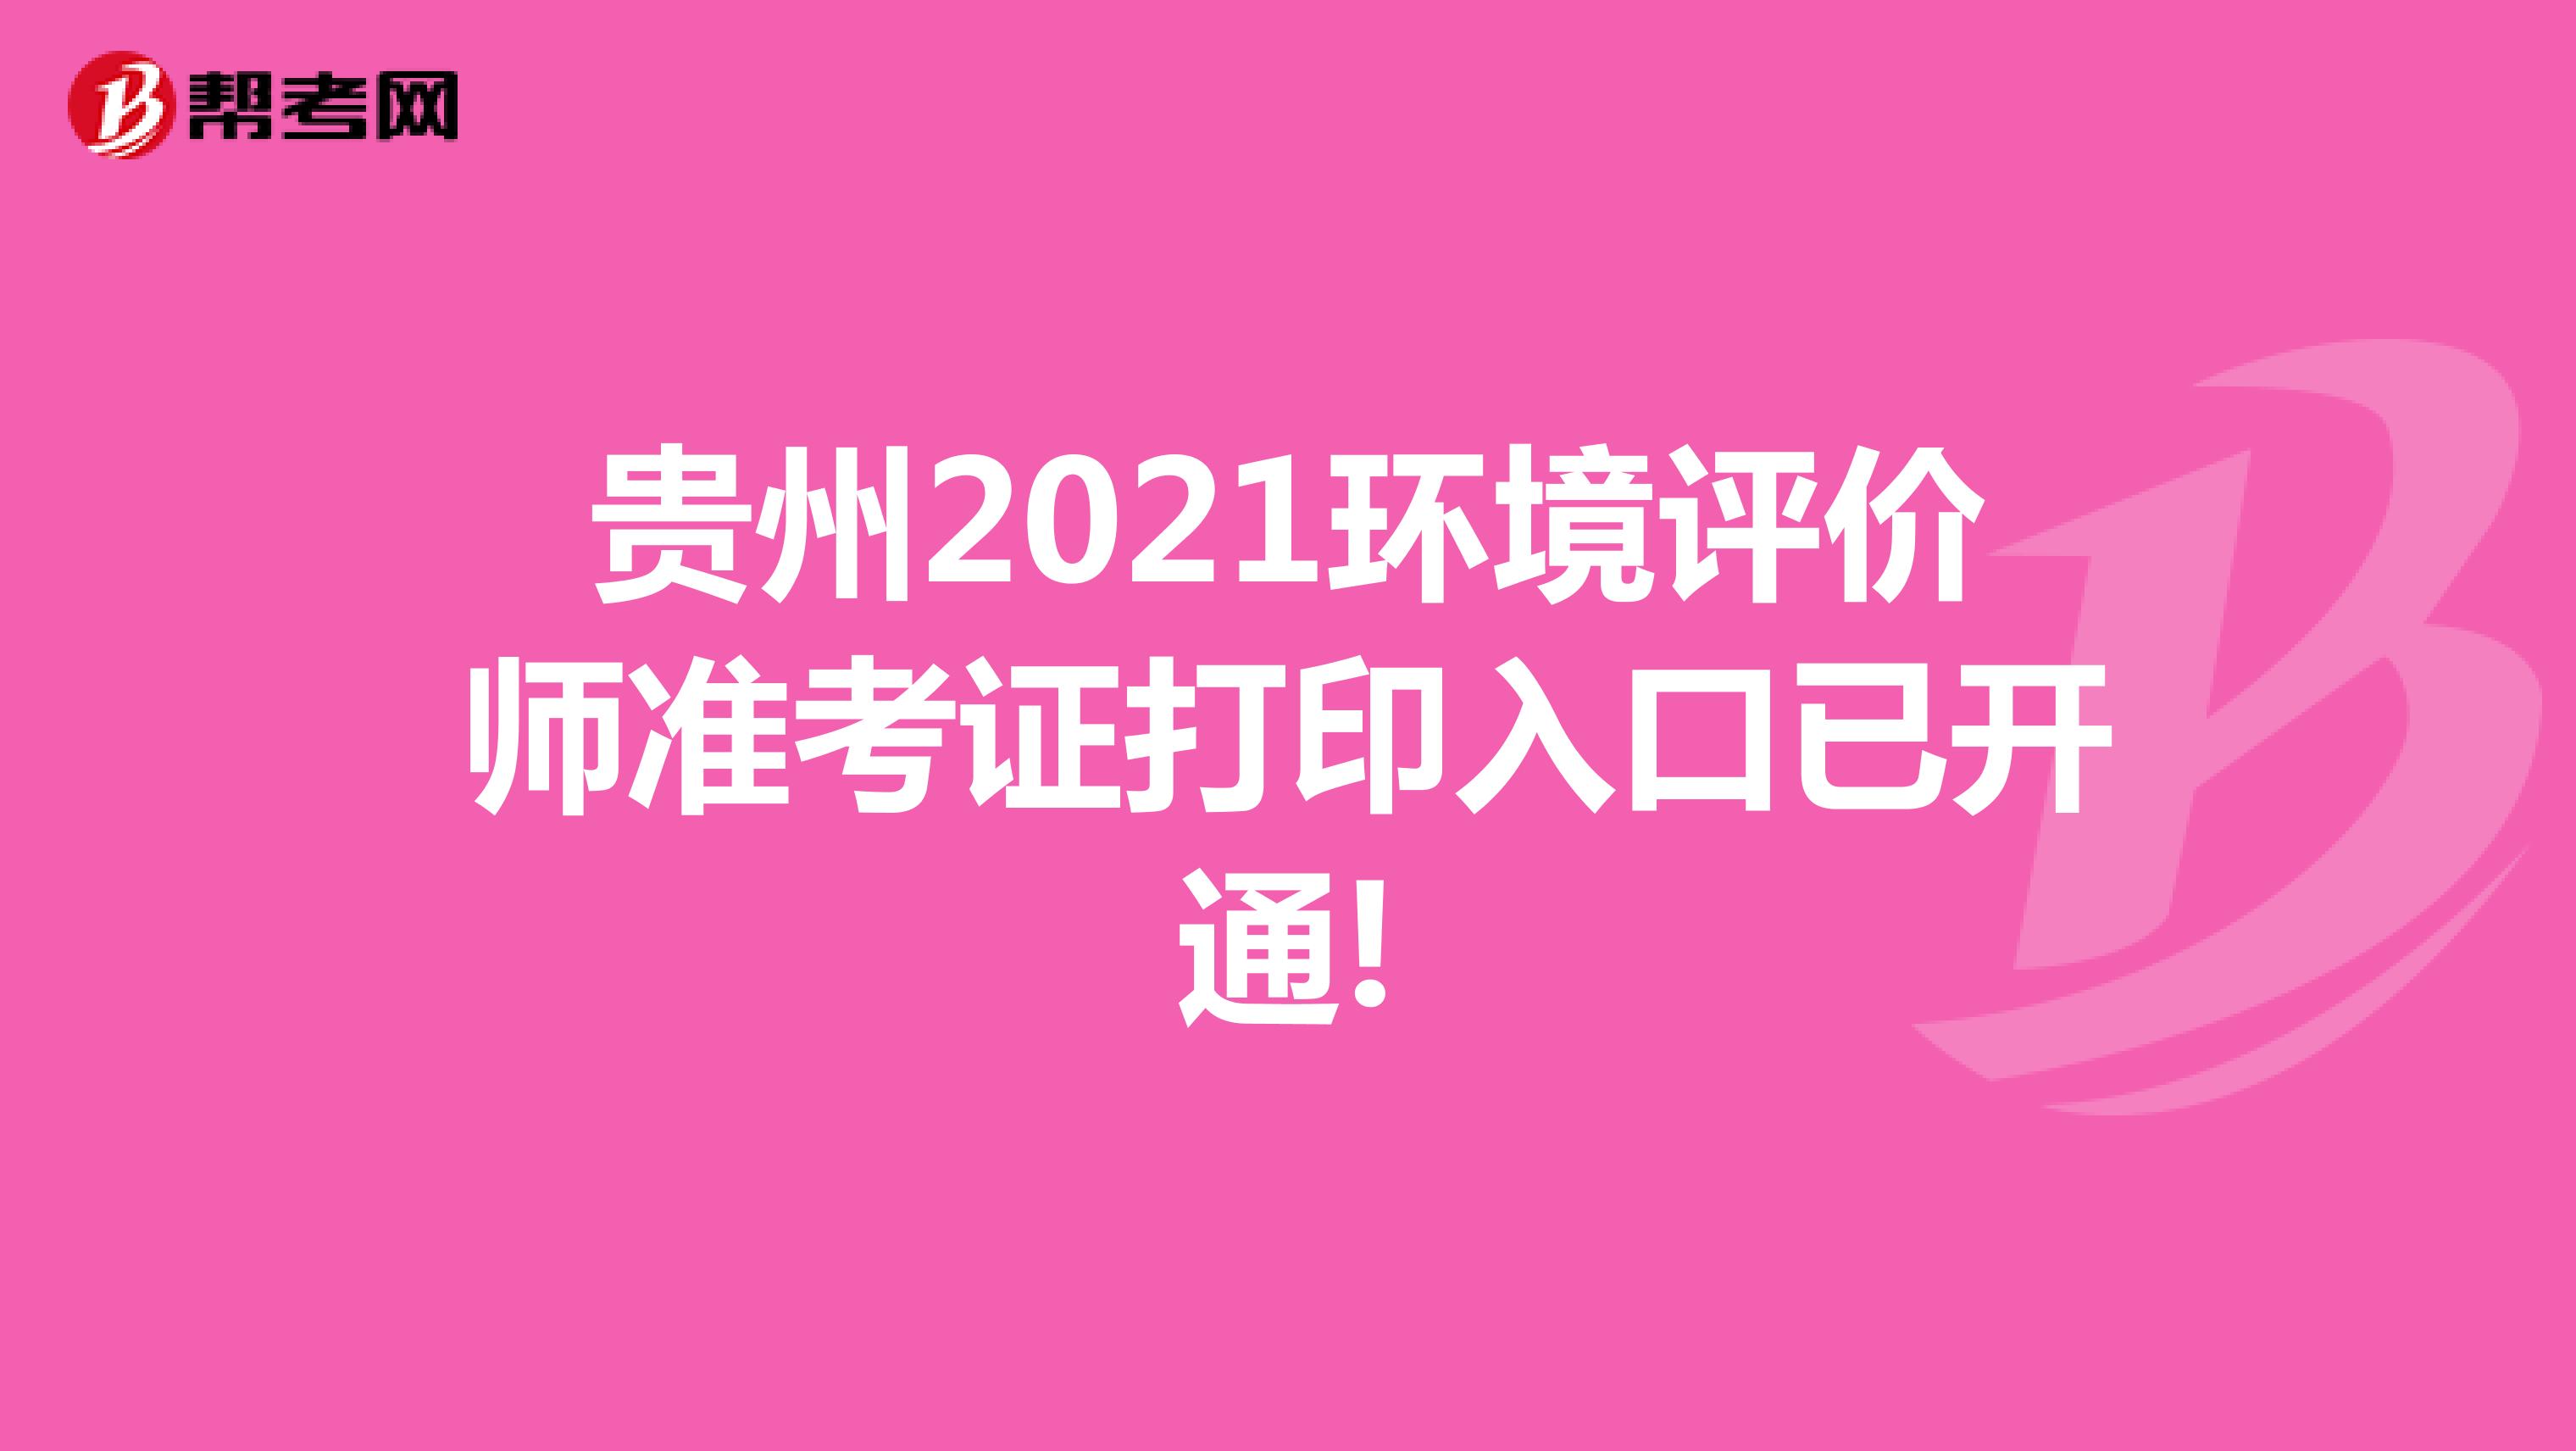 贵州2021环境评价师准考证打印入口已开通!